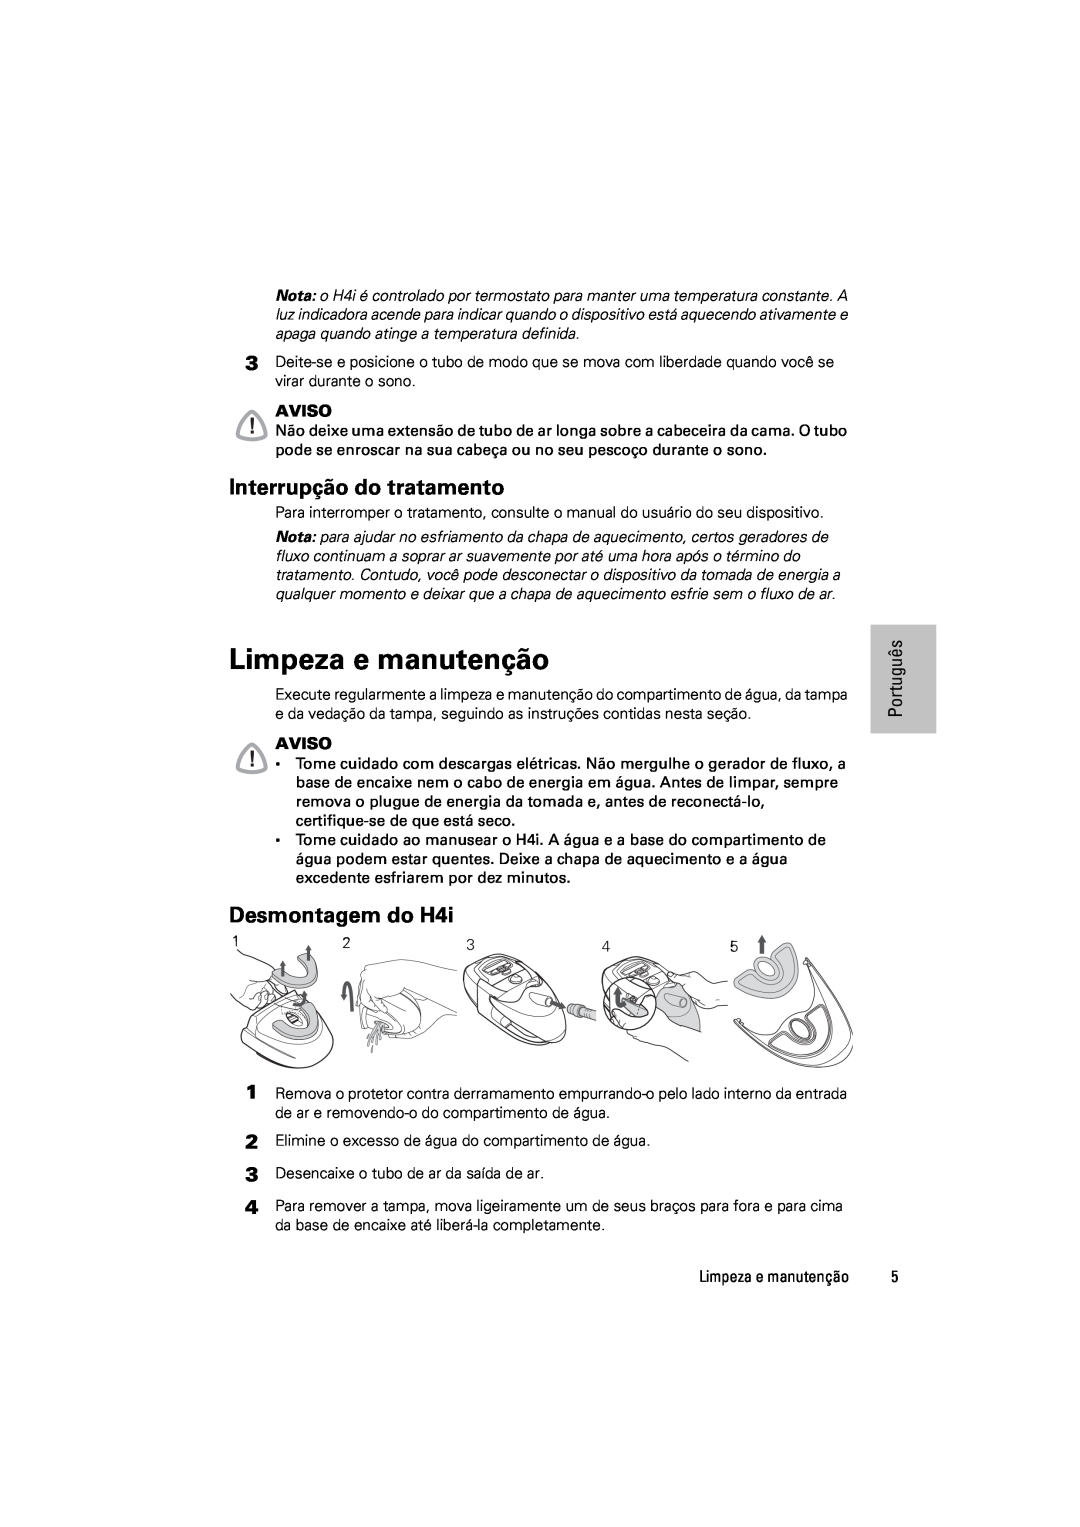 ResMed 248671/1 manual Limpeza e manutenção, Interrupção do tratamento, Desmontagem do H4i, Português, Aviso 